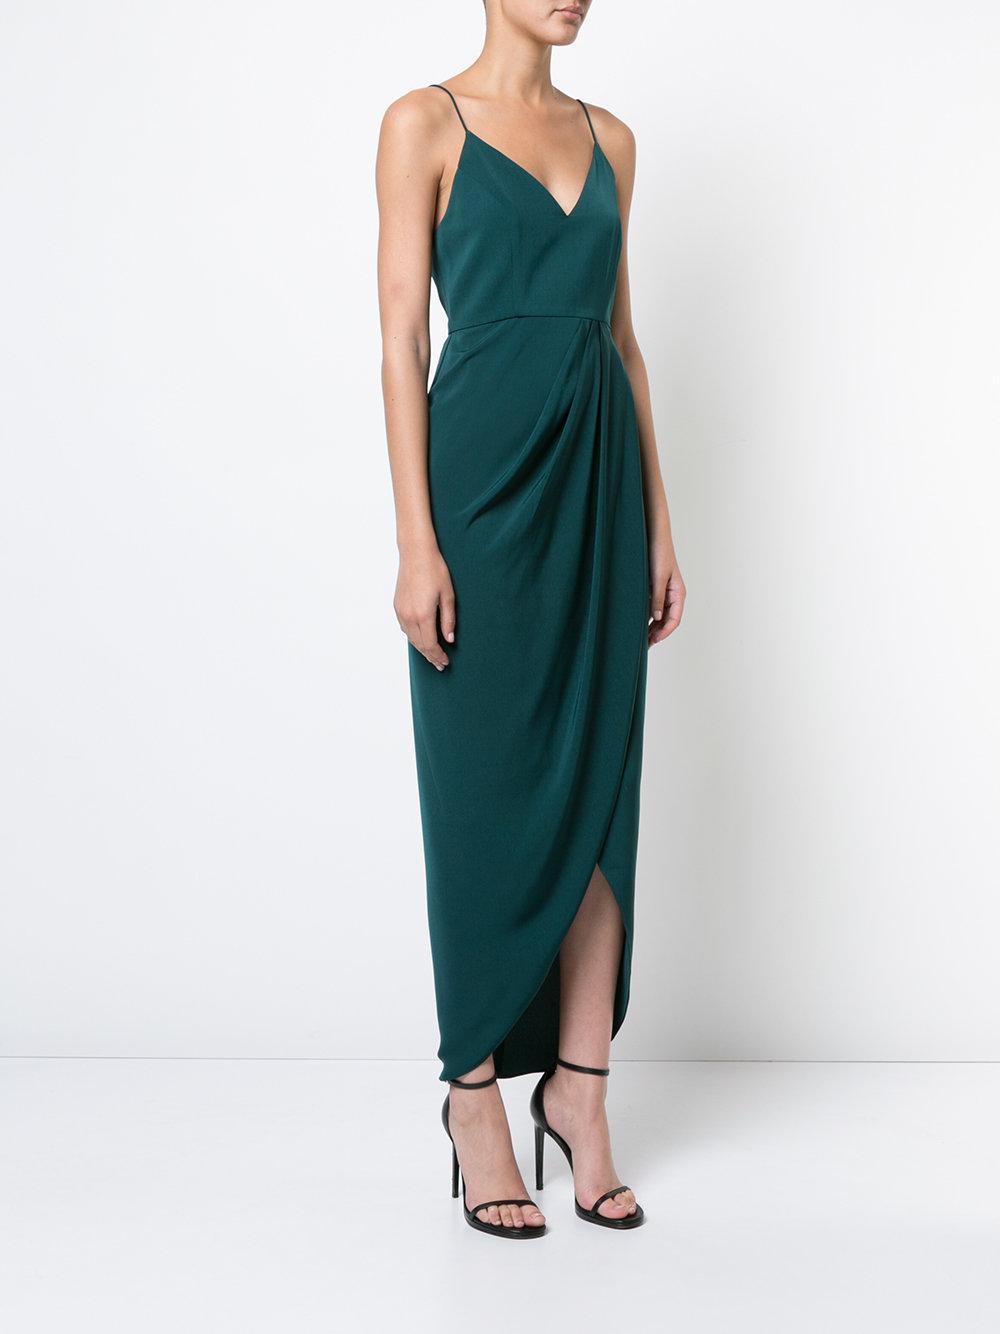 Shona Joy Draped Wrap-effect Dress in Green - Lyst